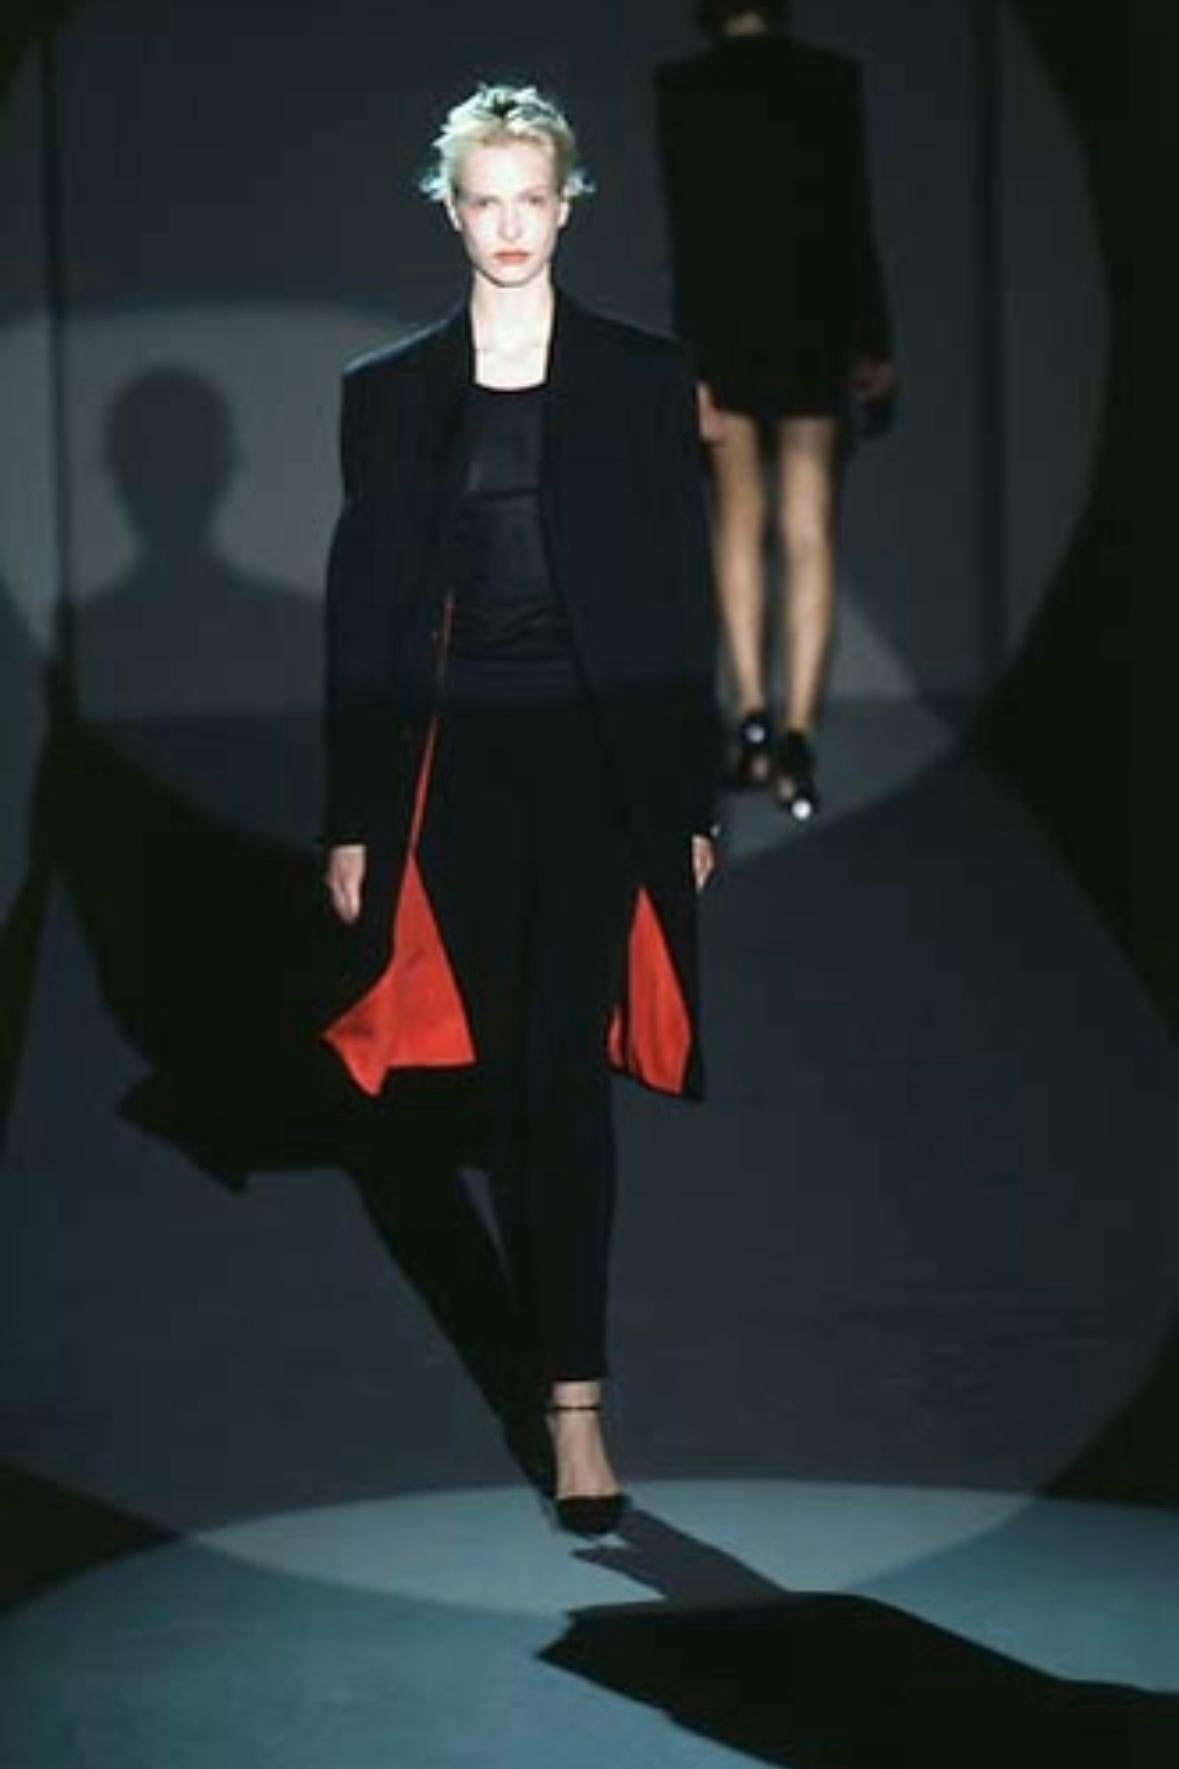 Présentation d'un fabuleux manteau long noir de Gucci, conçu par Tom Ford. Issu de la collection automne-hiver 1997, cet incroyable manteau se ferme par un bouton dissimulé sur le devant, comporte des poches sur les hanches et est complété par des